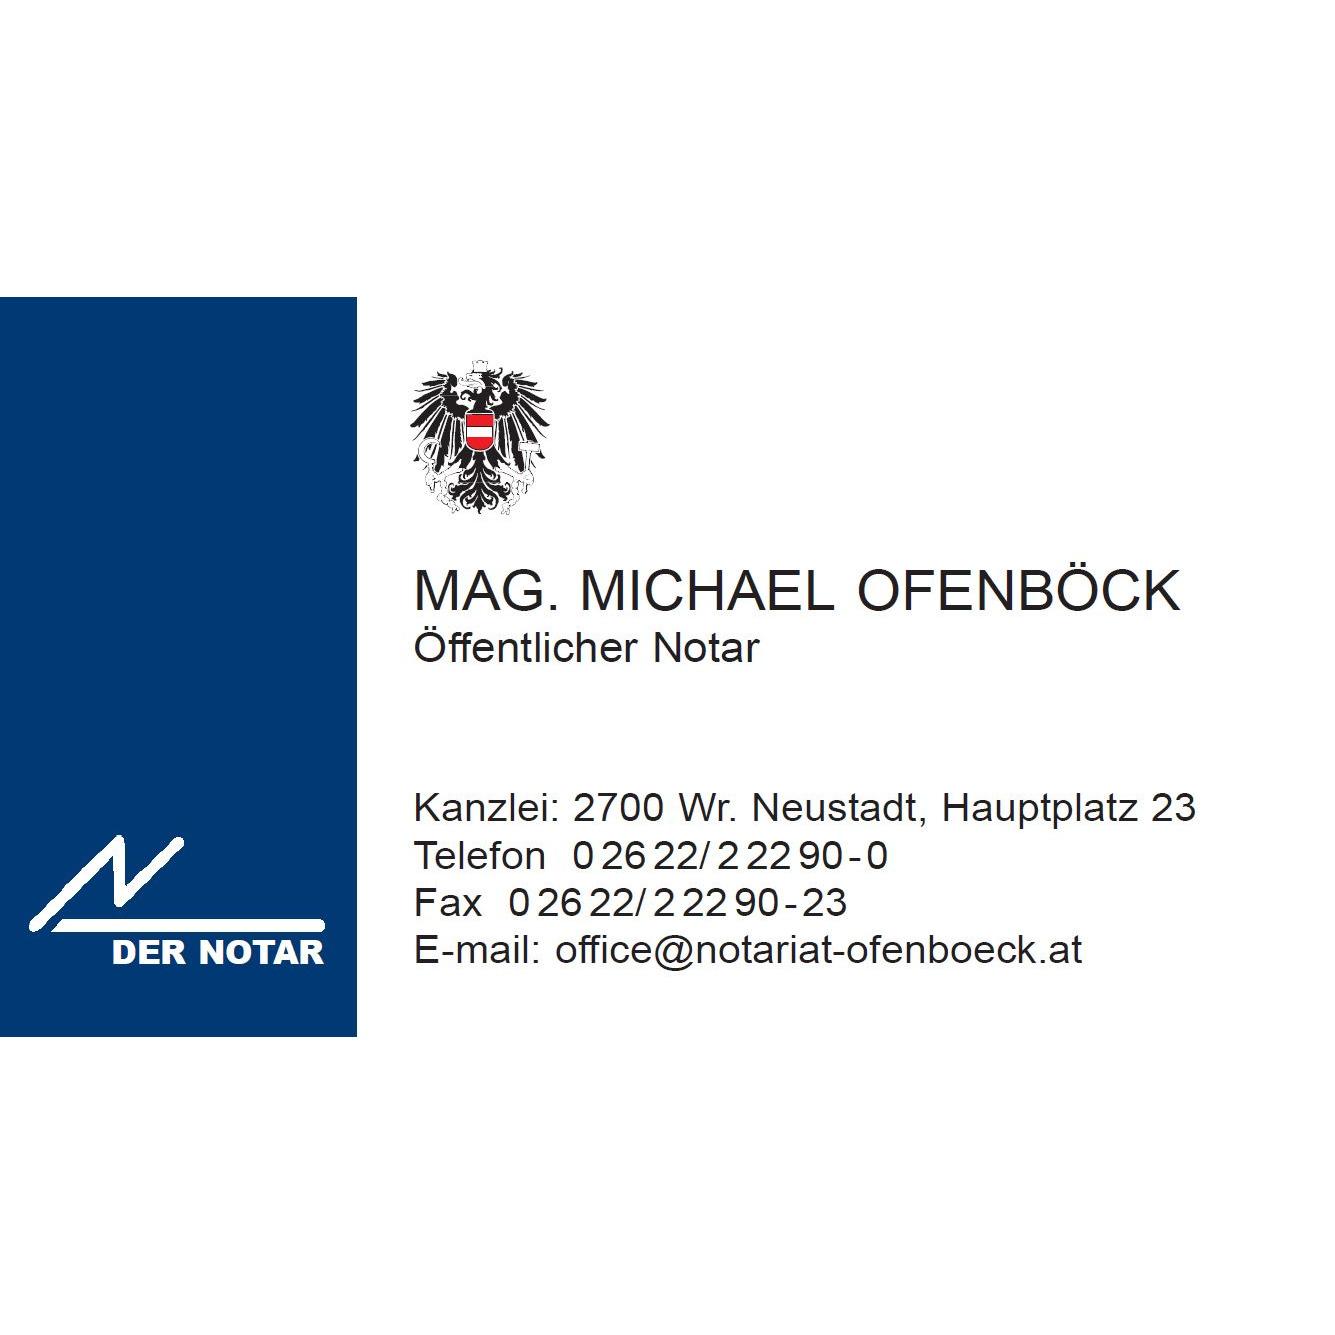 Mag. Michael Ofenböck 2700